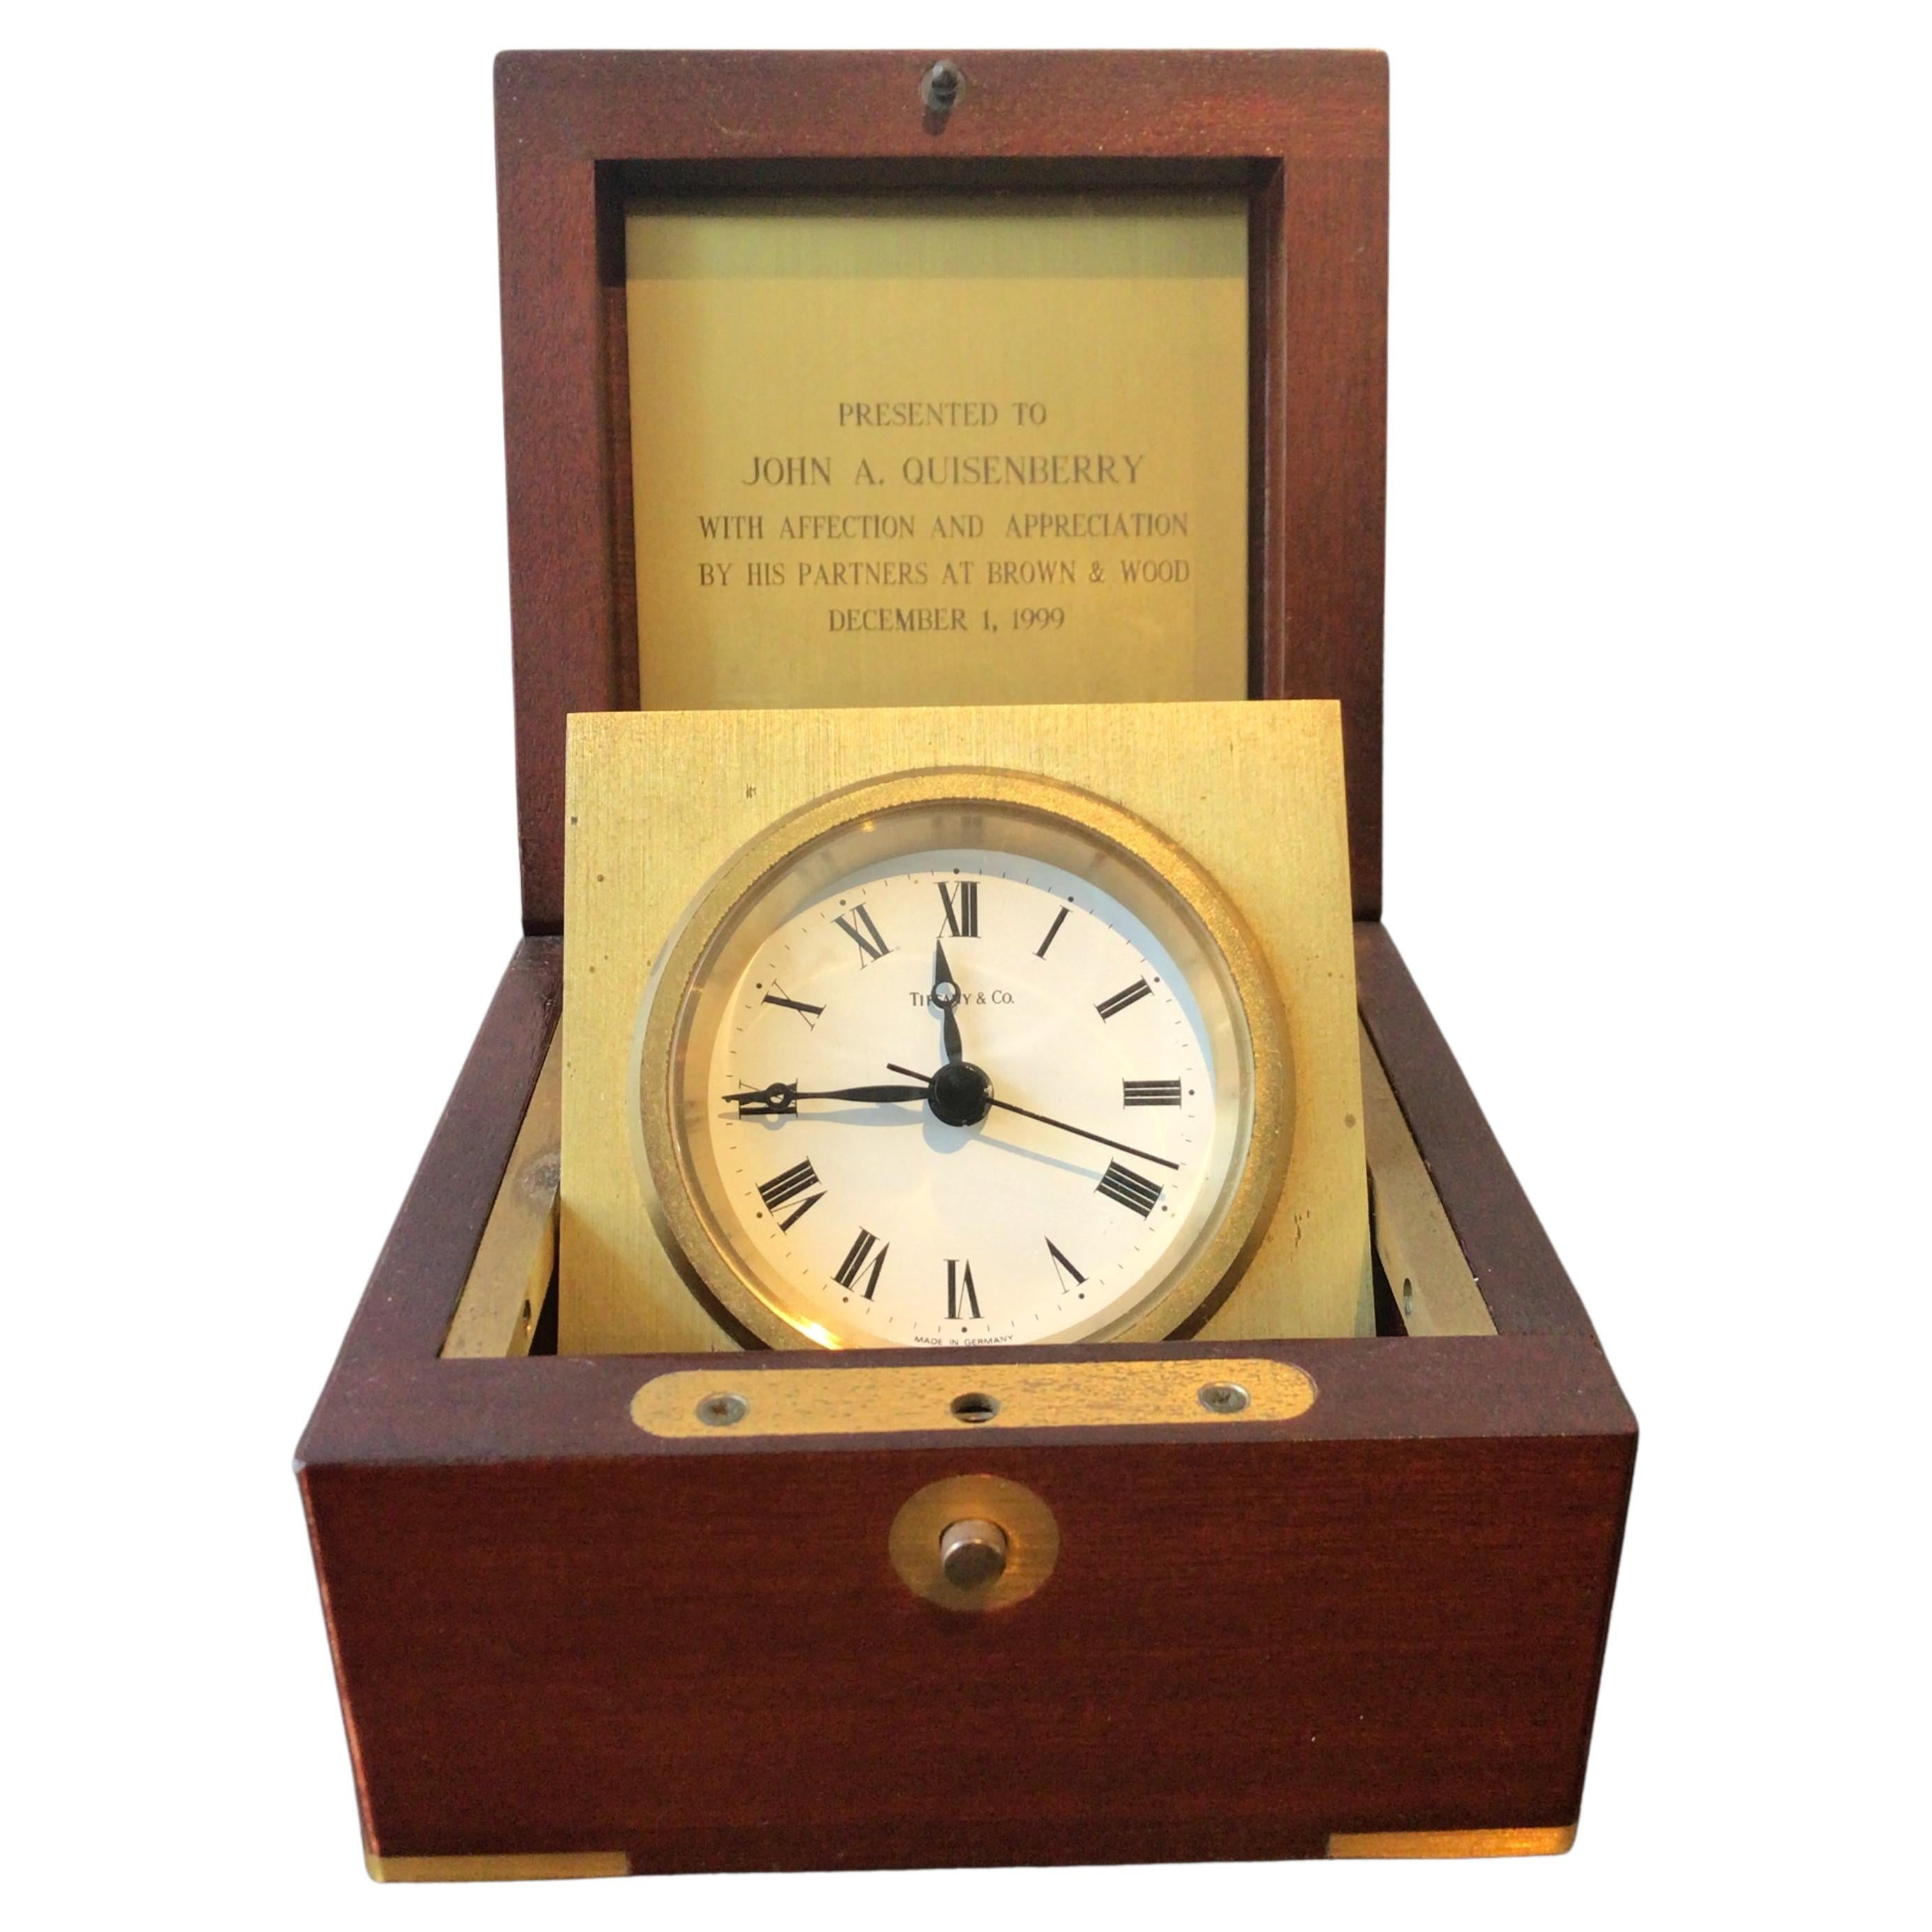 Tiffany & Co. Desk Clock in Mahogany and Brass Box